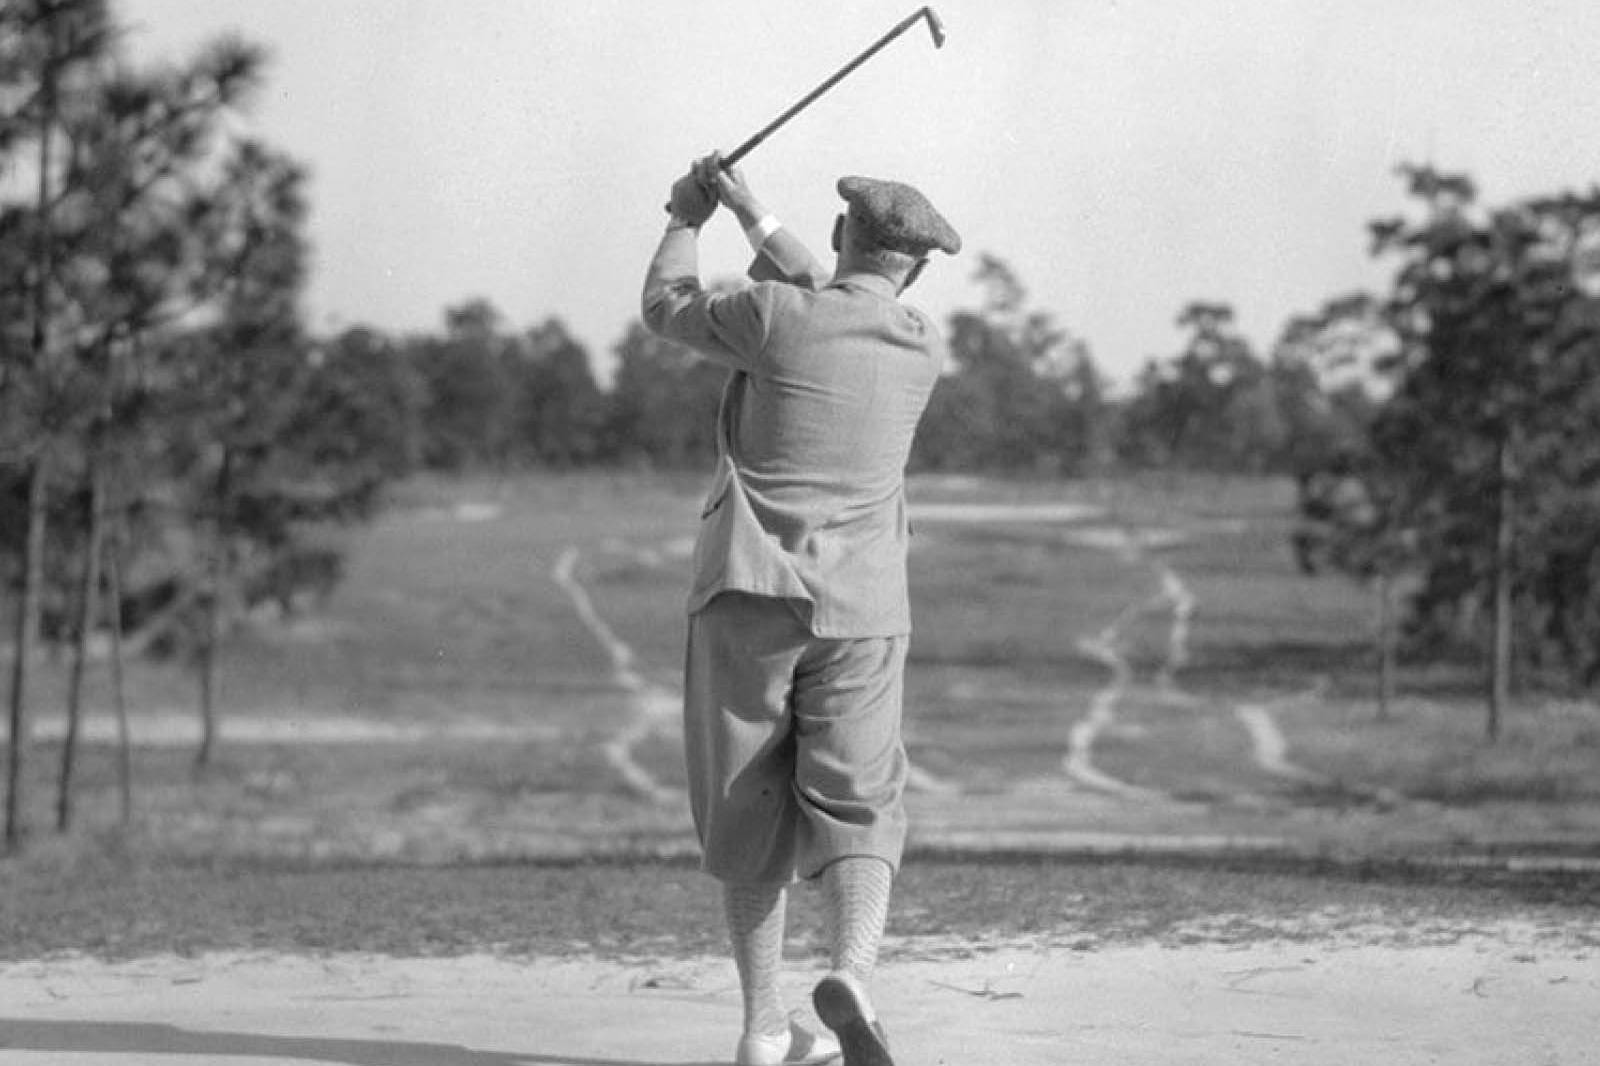 man mid swing of a golf club